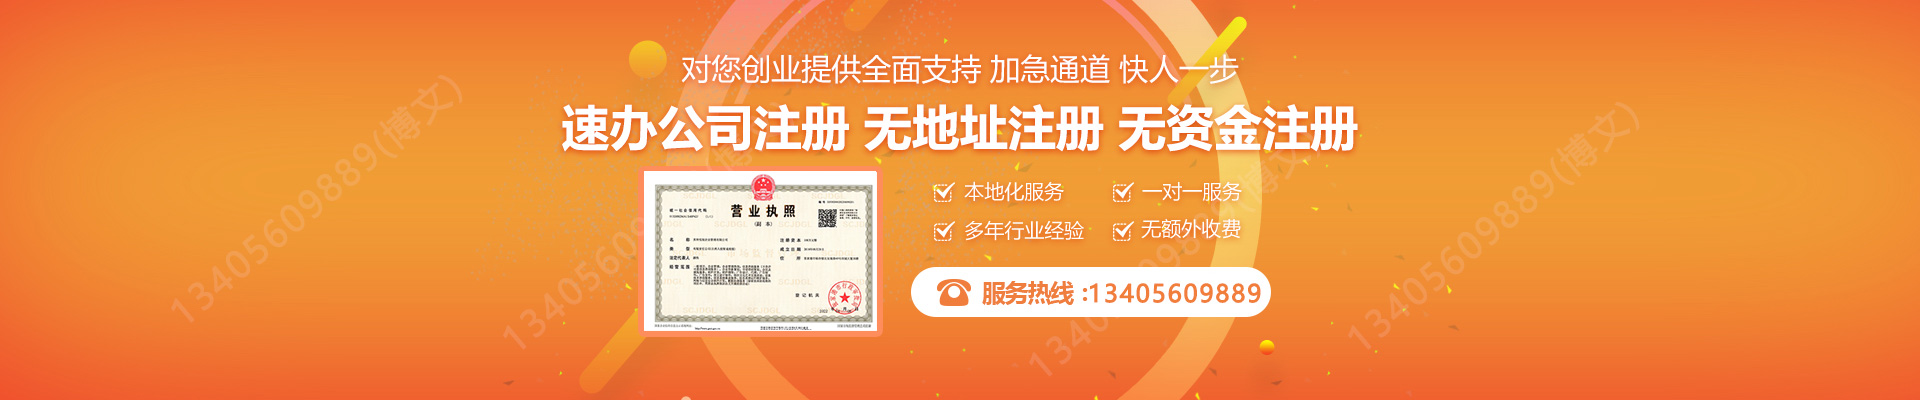 婺城注册公司网